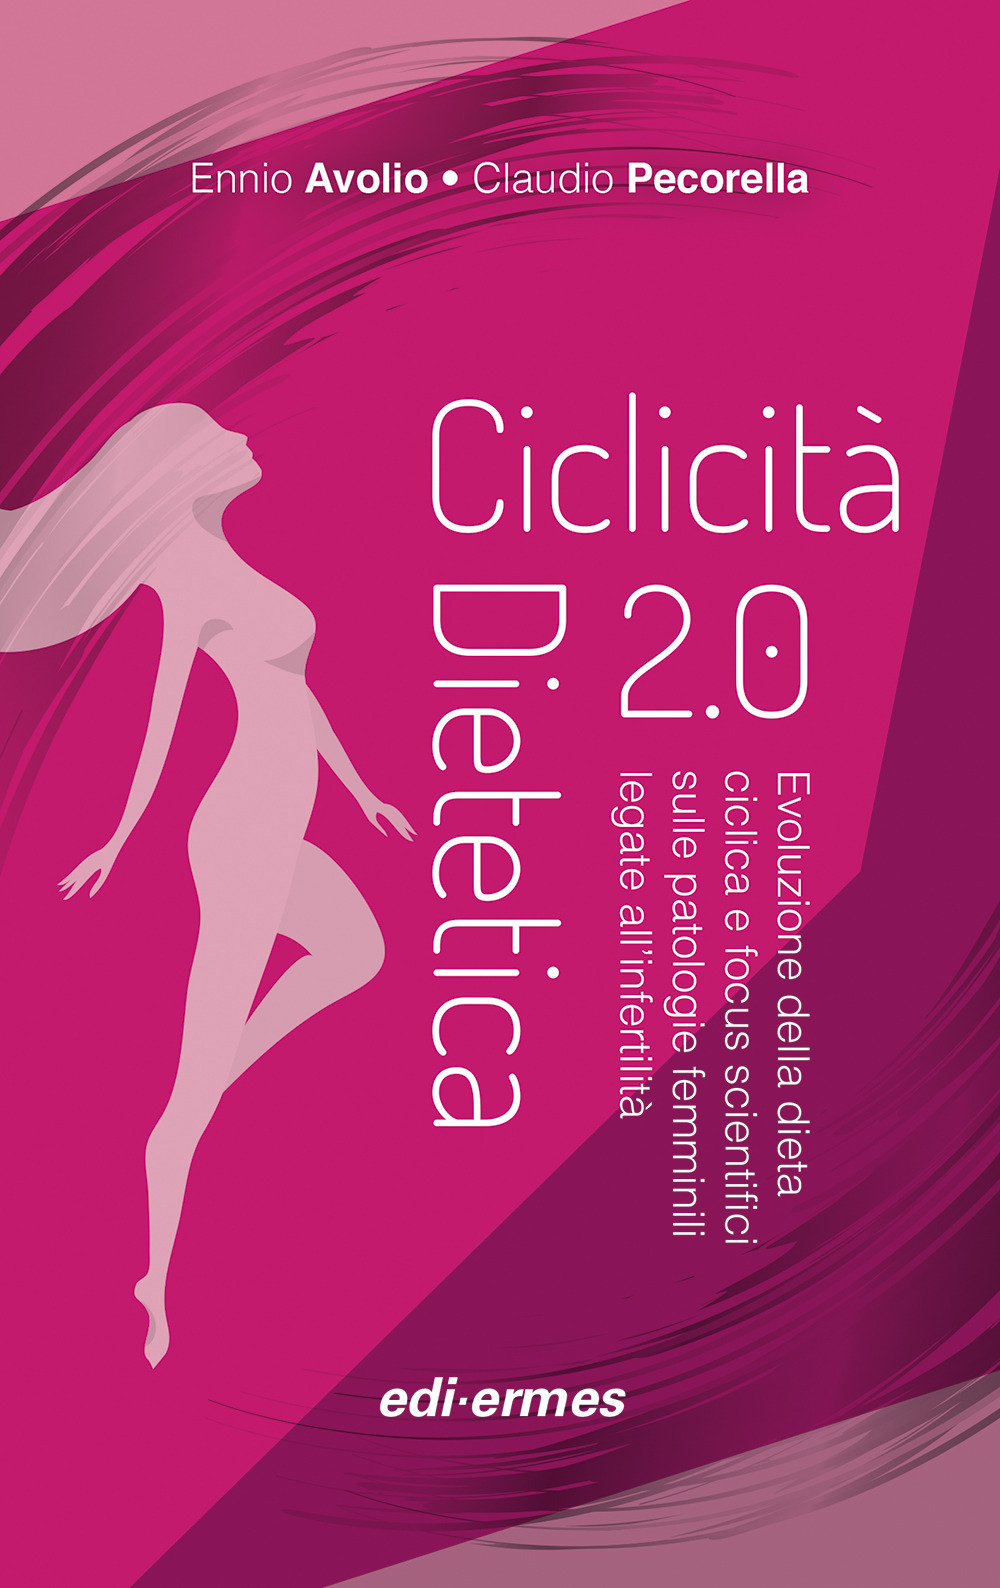 Image of Ciclicità dietetica 2.0. Evoluzione della dieta ciclica e focus scientifici sulle patologie femminili legate all'infertilità